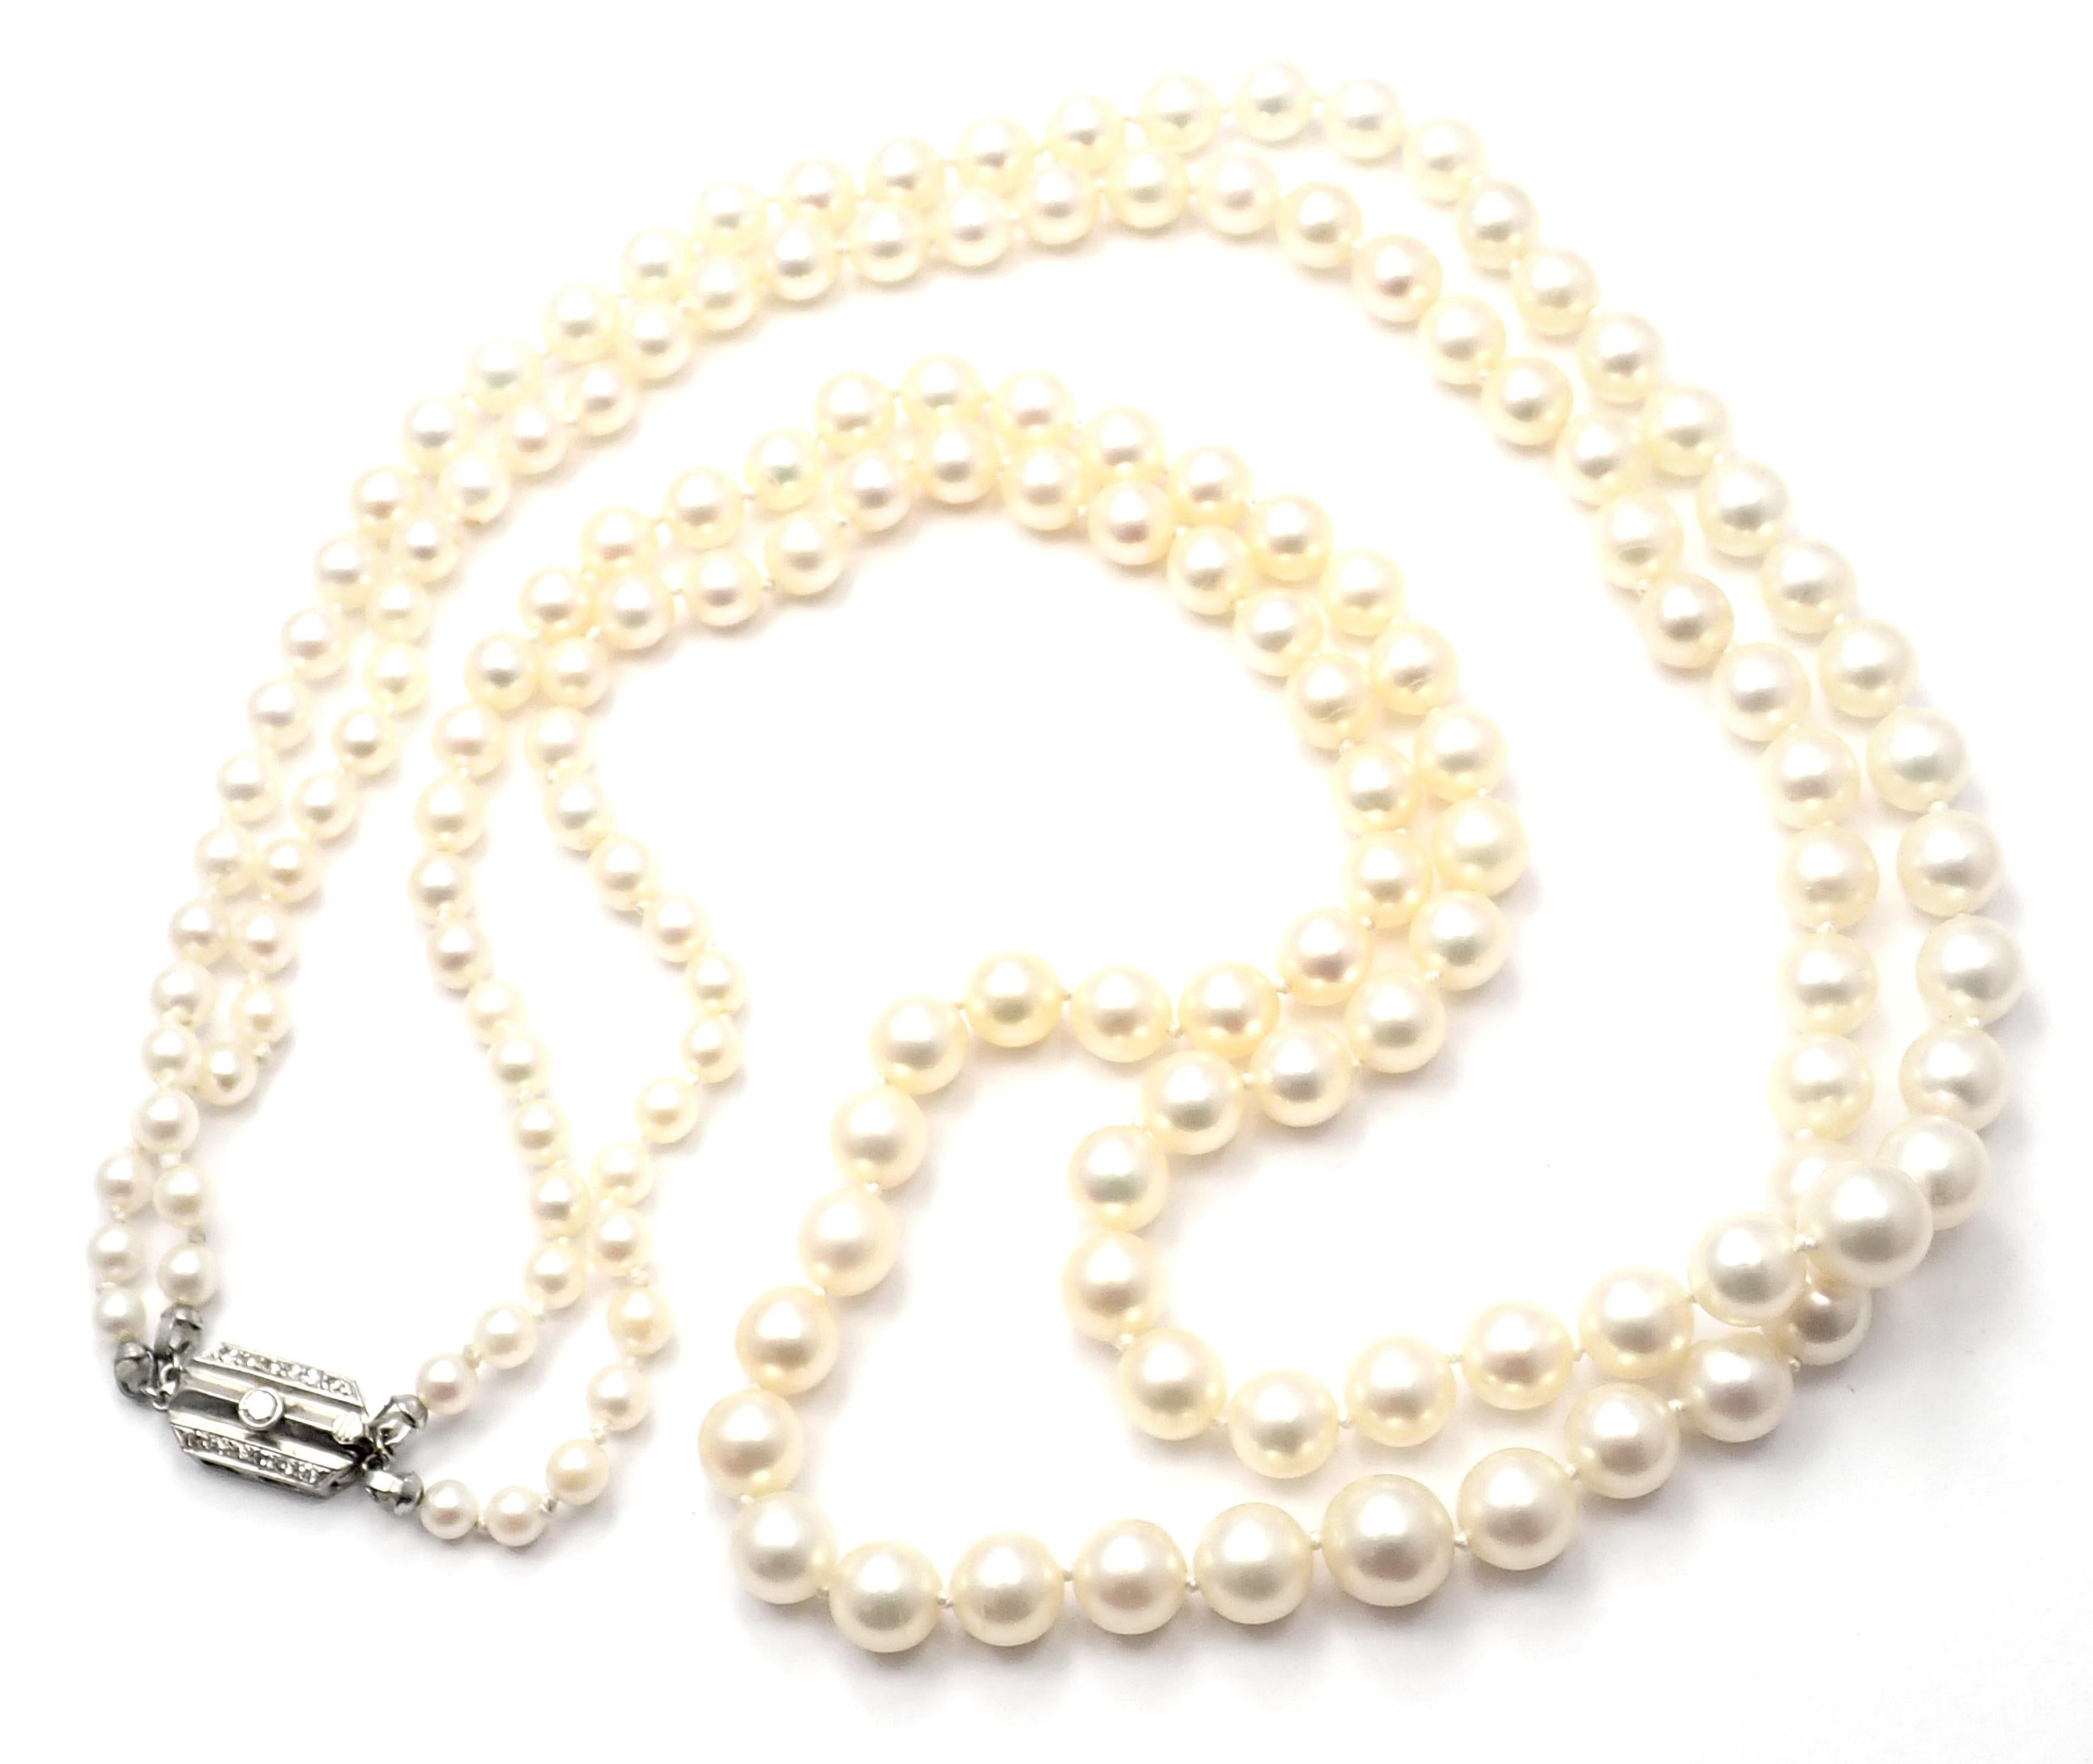 Collier de perles à double rang de diamants en platine par Mikimoto. 
Avec des perles dont le diamètre varie de 8 mm à 4::5 mm sur un double fil de 22